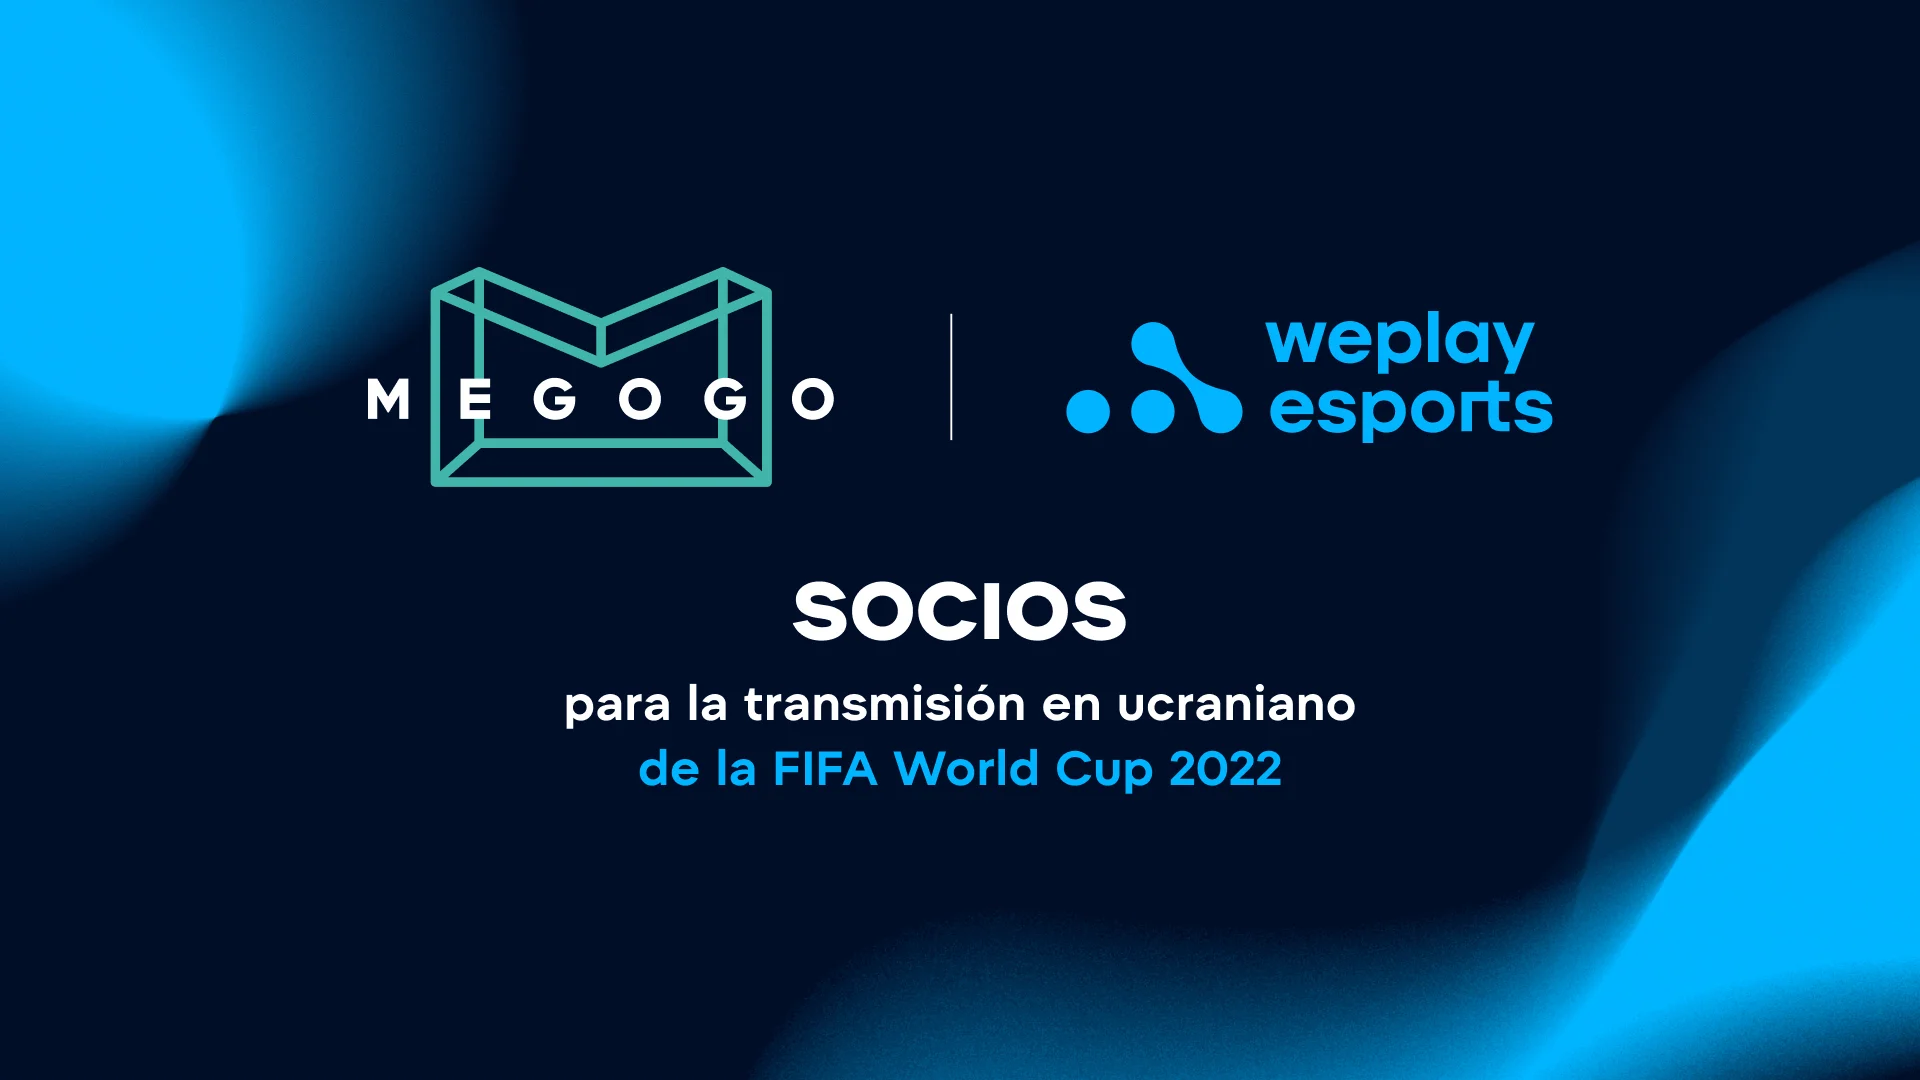 WePlay Esports es el socio productor oficial de la transmisión en ucraniano de la FIFA World Cup 2022. Imagen: WePlay Holding